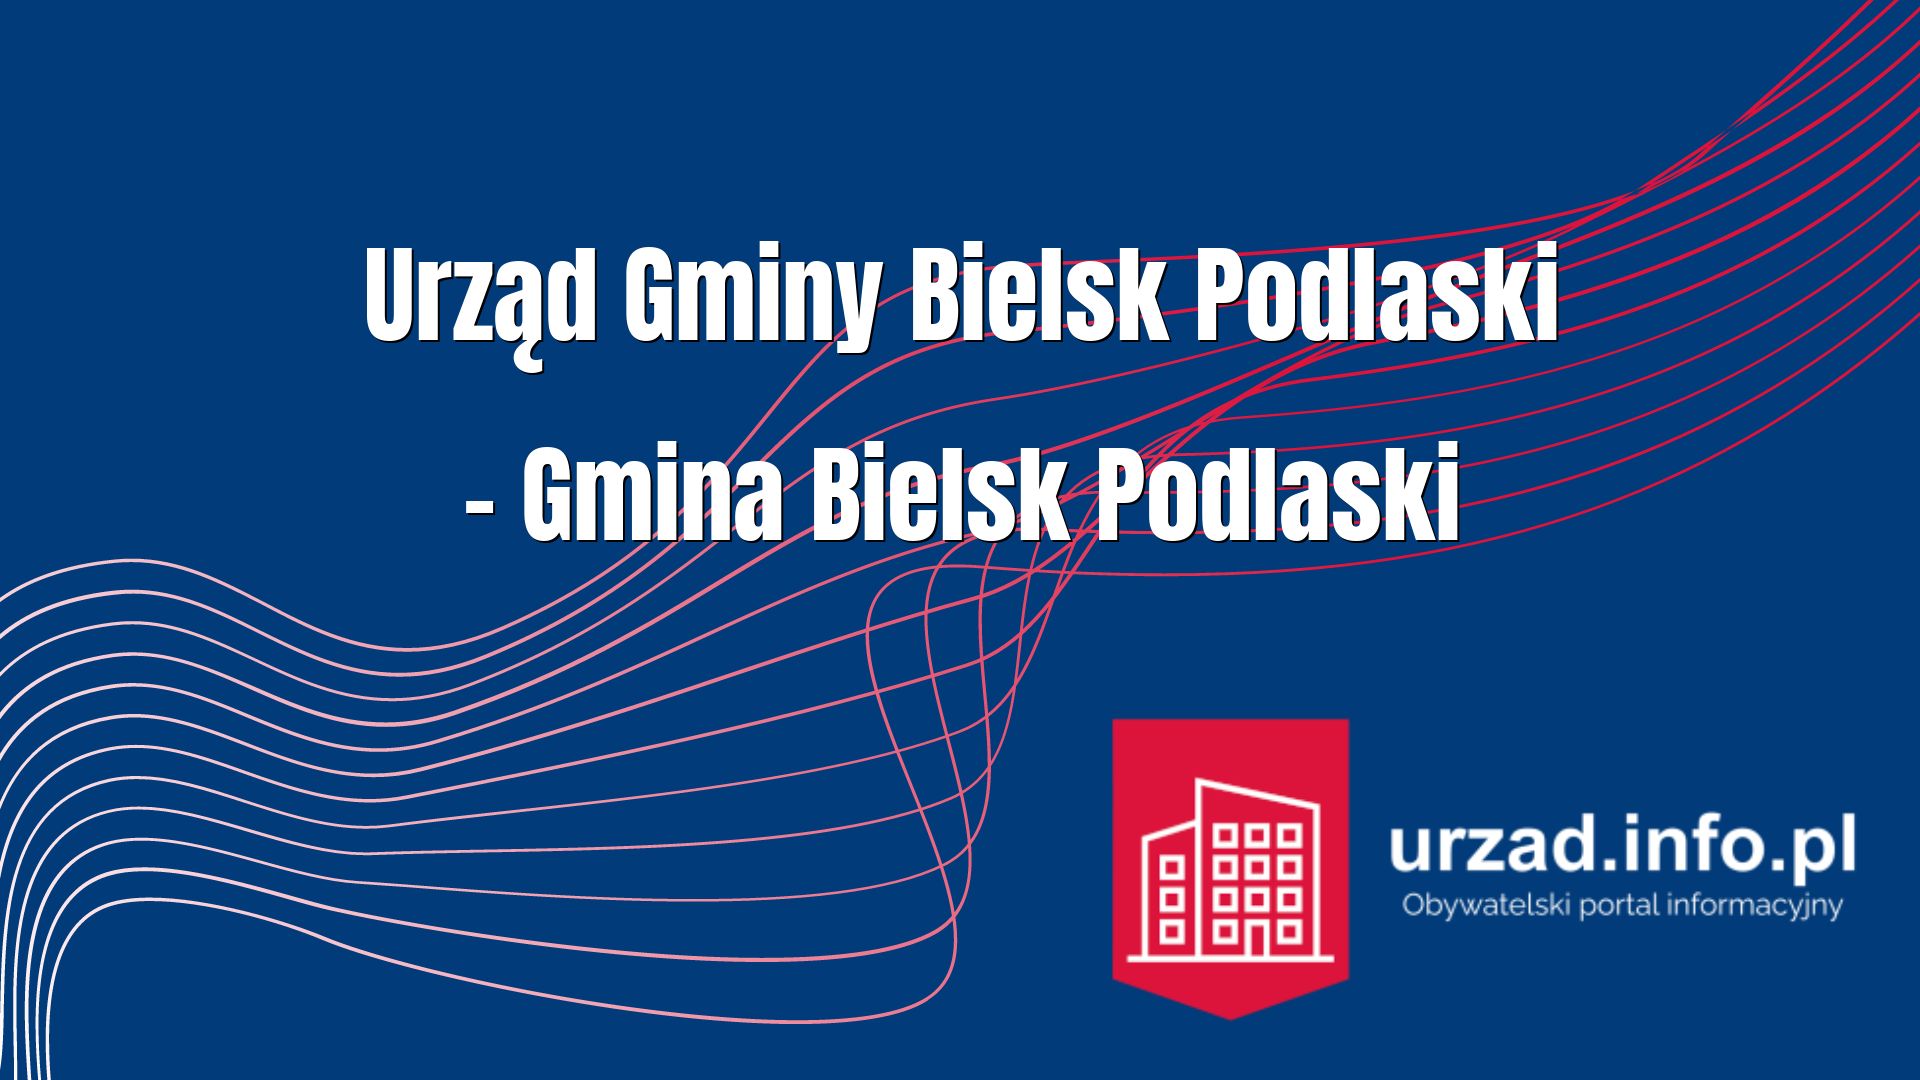 Urząd Gminy Bielsk Podlaski – Gmina Bielsk Podlaski